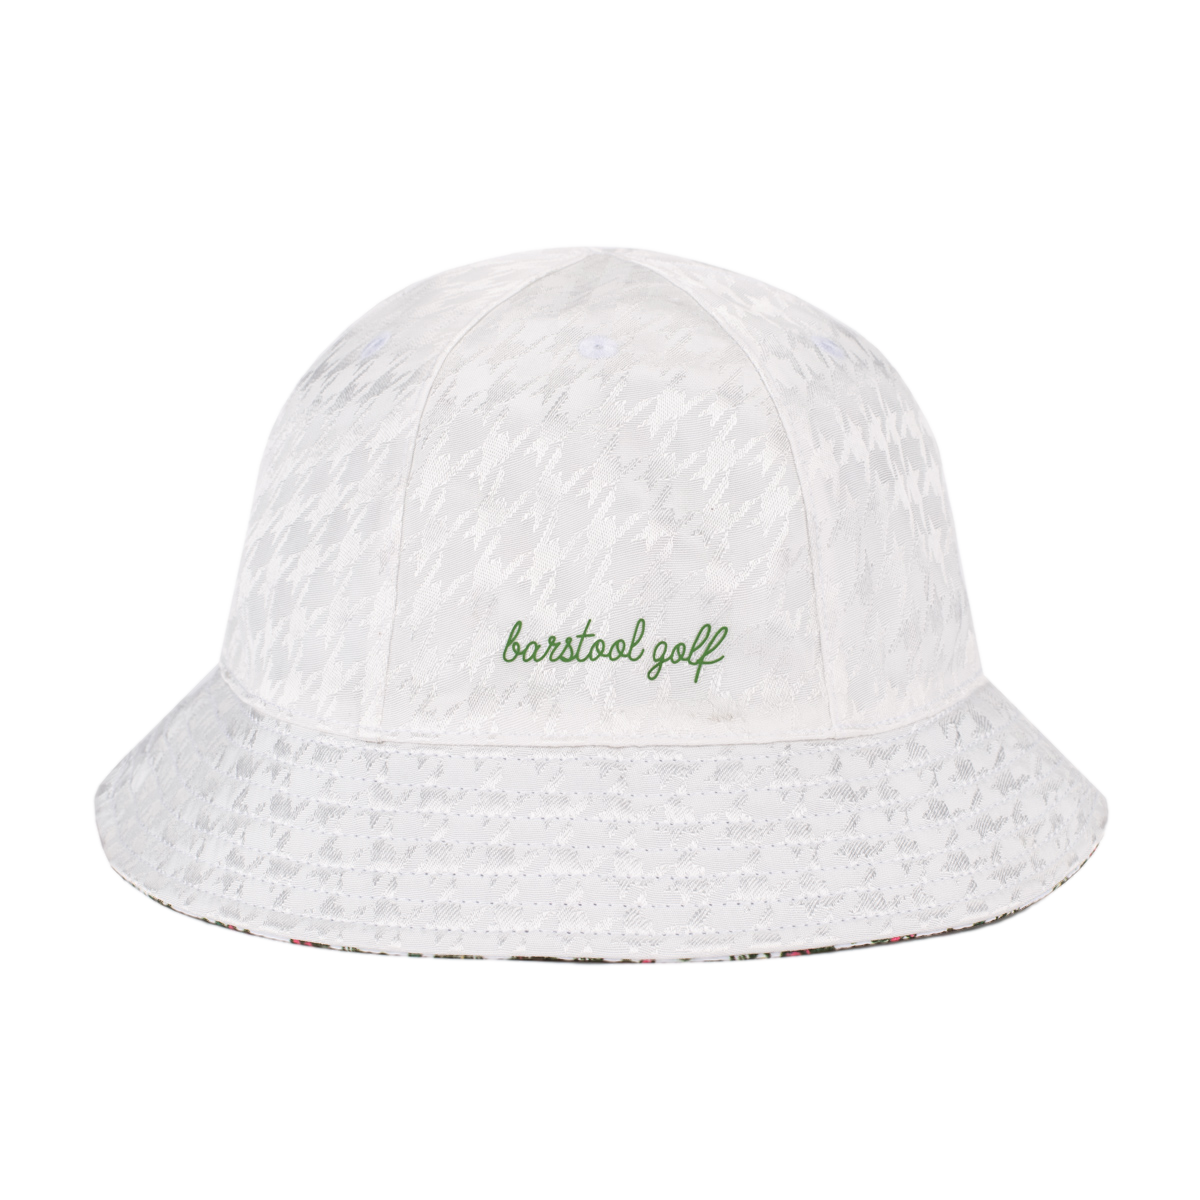 Reversible Women's Bucket Hat